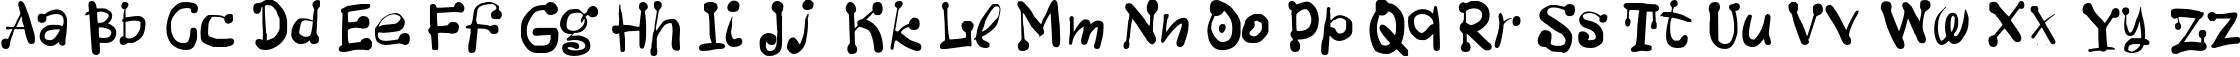 Пример написания английского алфавита шрифтом BistroC